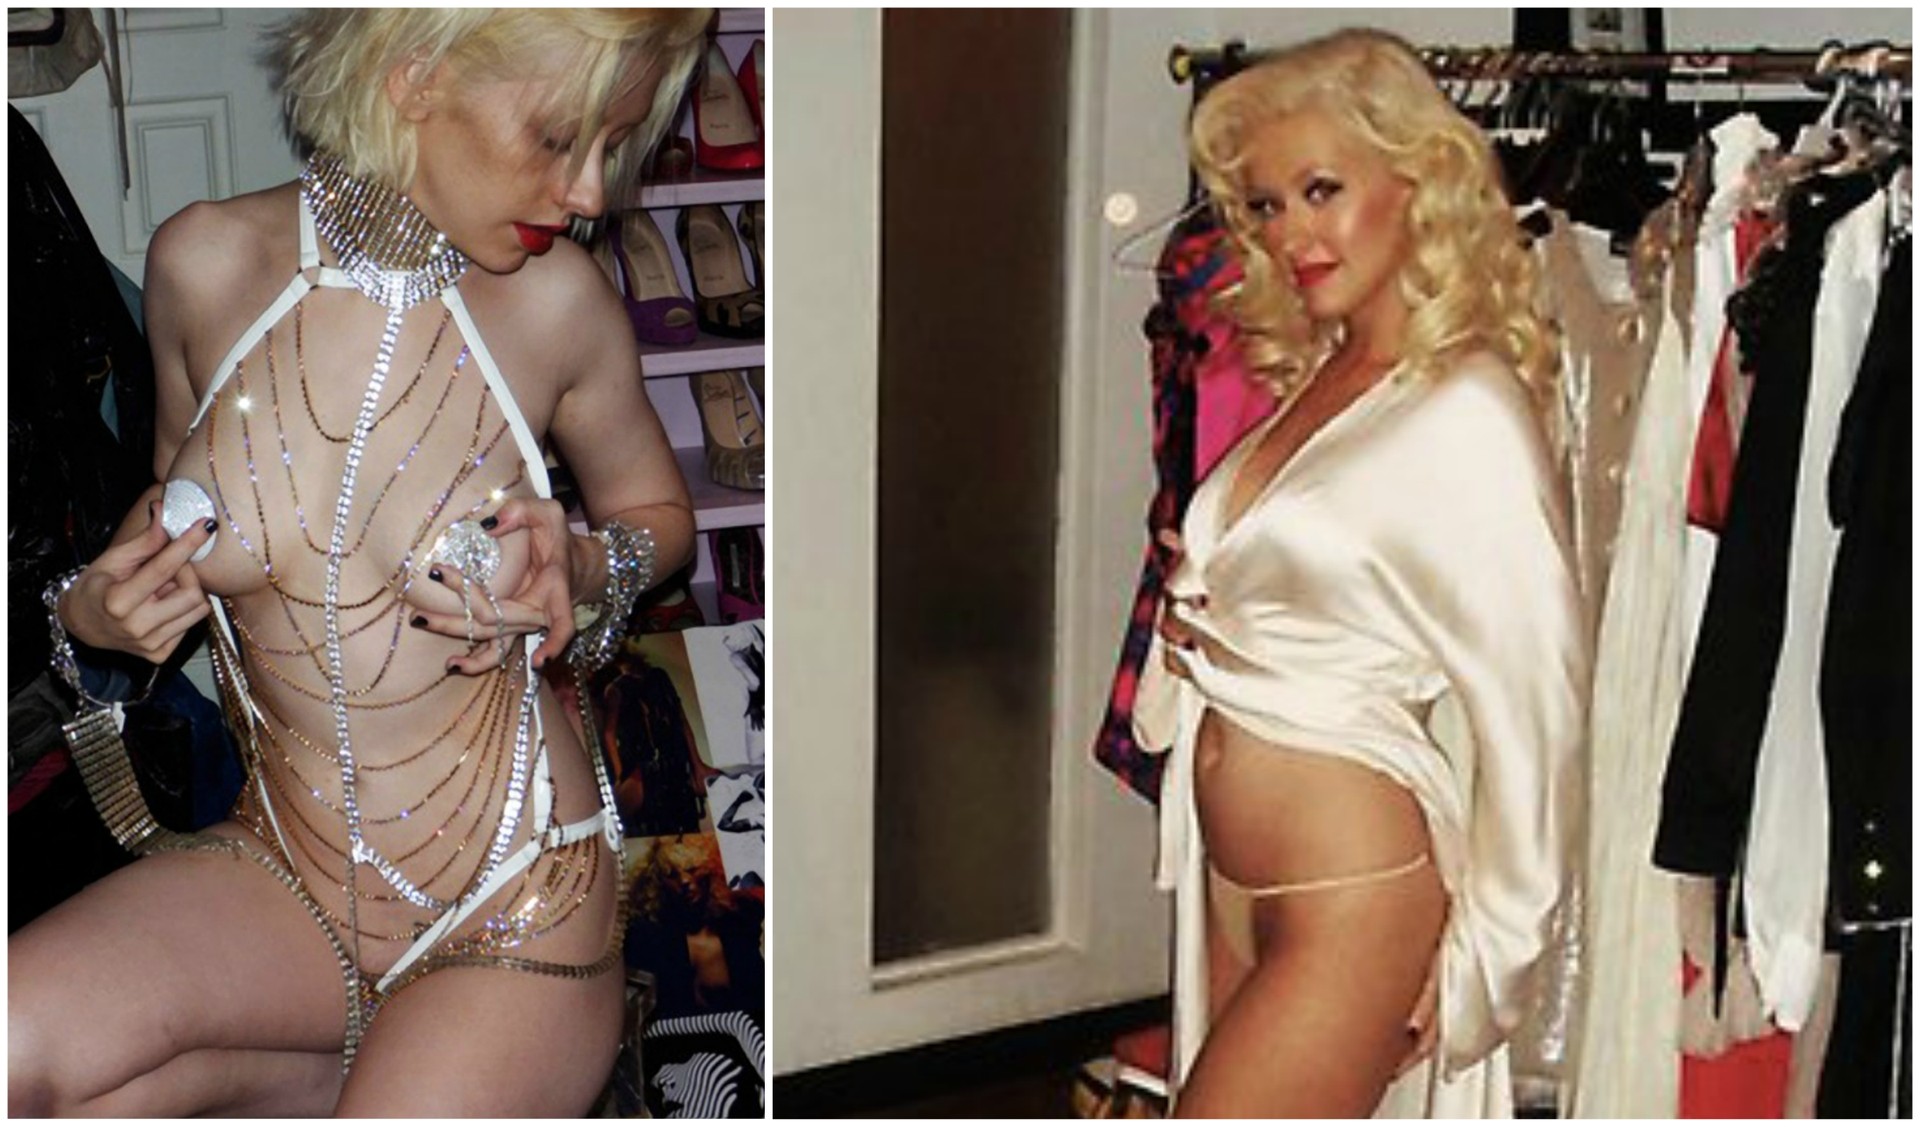 Em dezembro de 2010, um hacker invadiu os computadores do personal stylist de Christina Aguilera e fotos da cantora com pouquíssima roupa passaram a circular pela internet. (Foto: Reprodução)